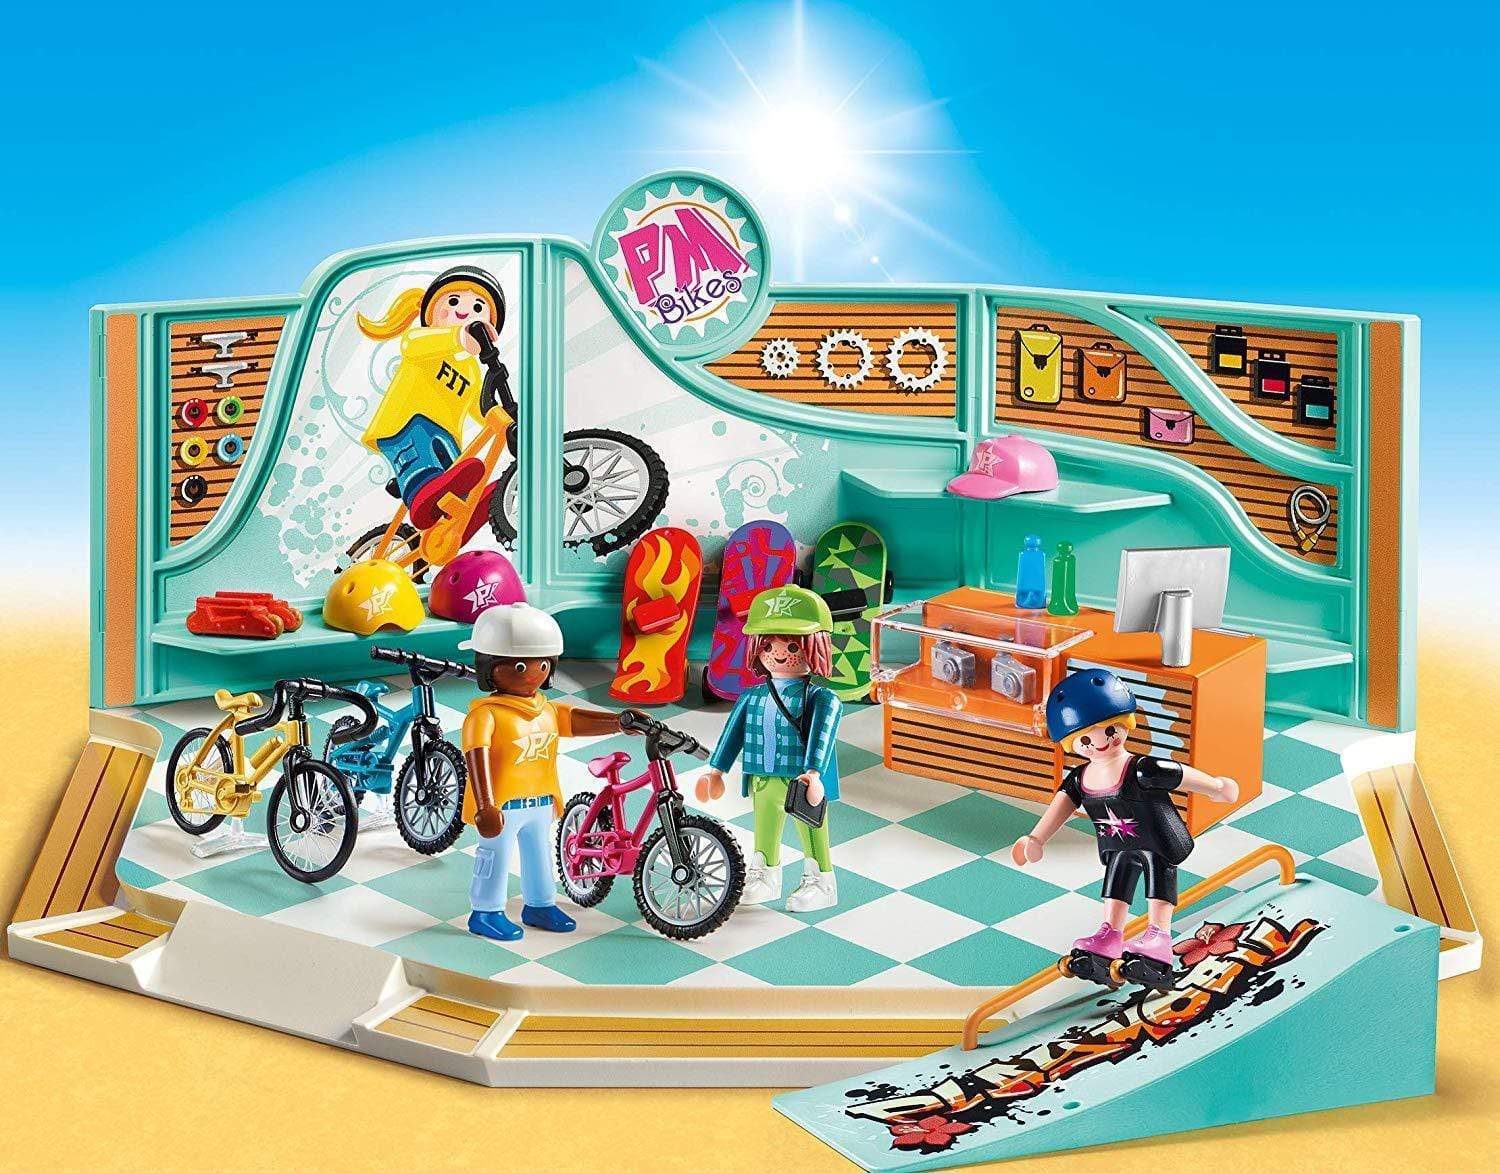 פליימוביל חנות אופניים וסקייטבורד 9402-zrizi toys